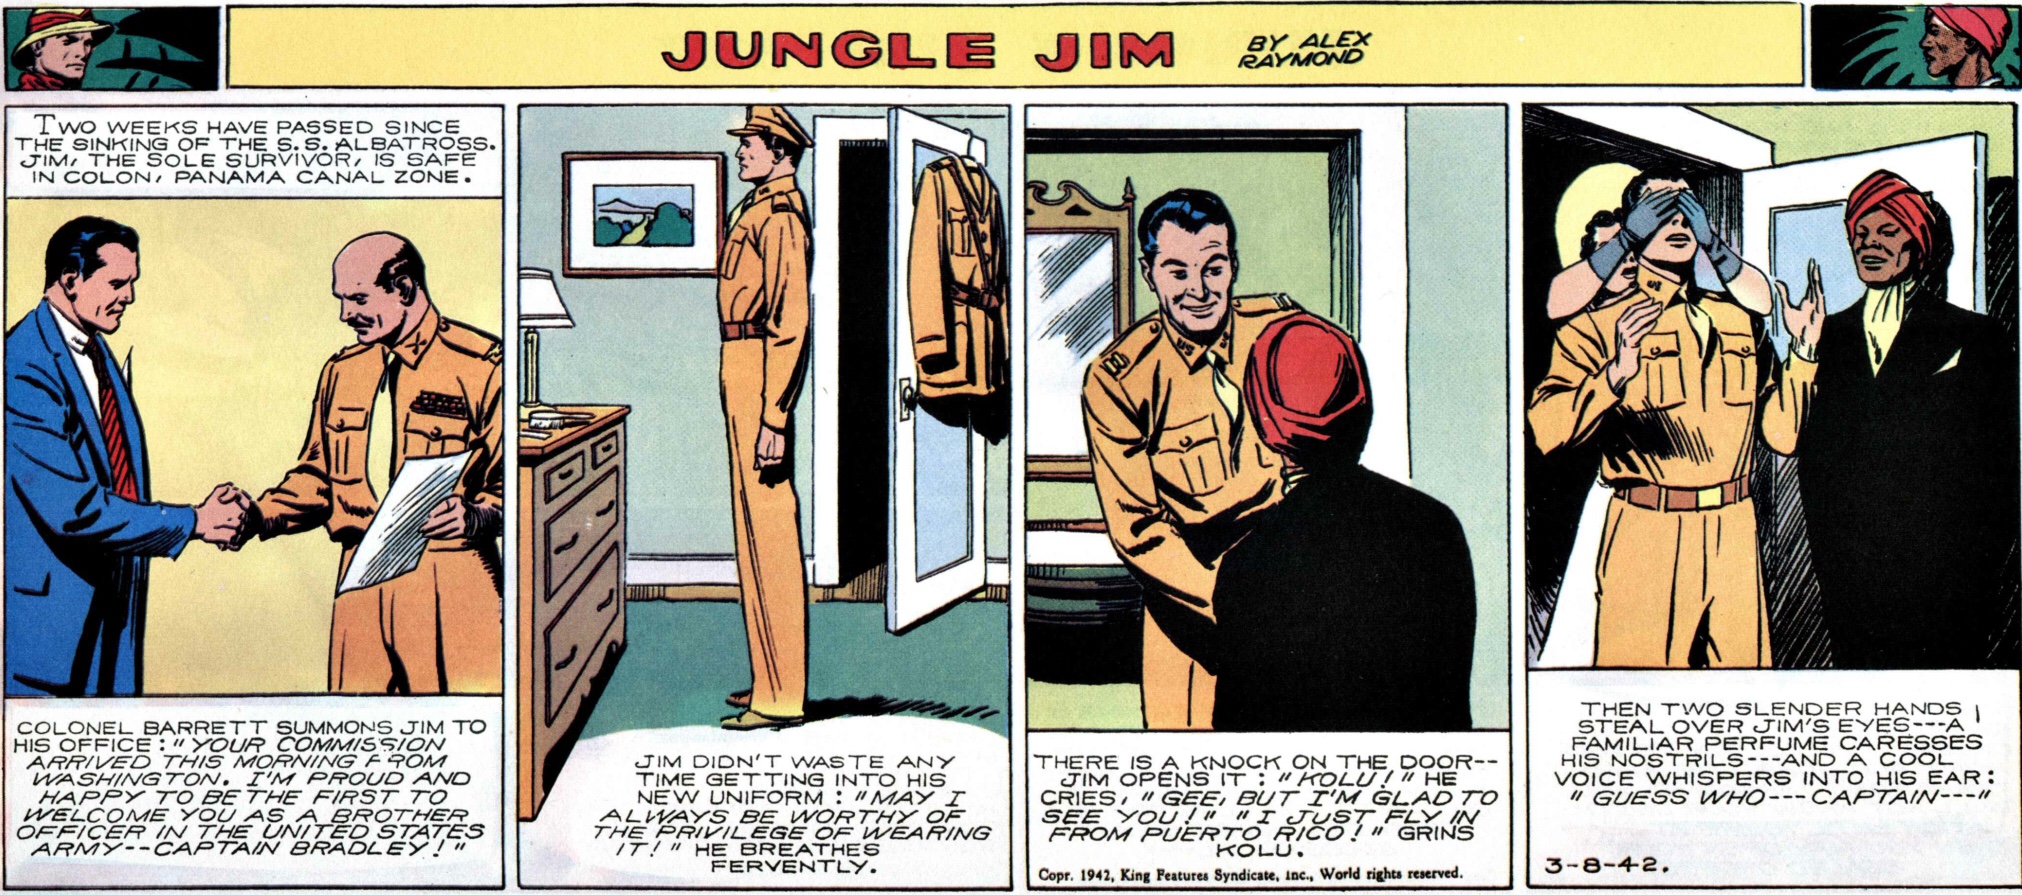 Den 8 mars 1942 blir Jungle Jim arméofficerare.